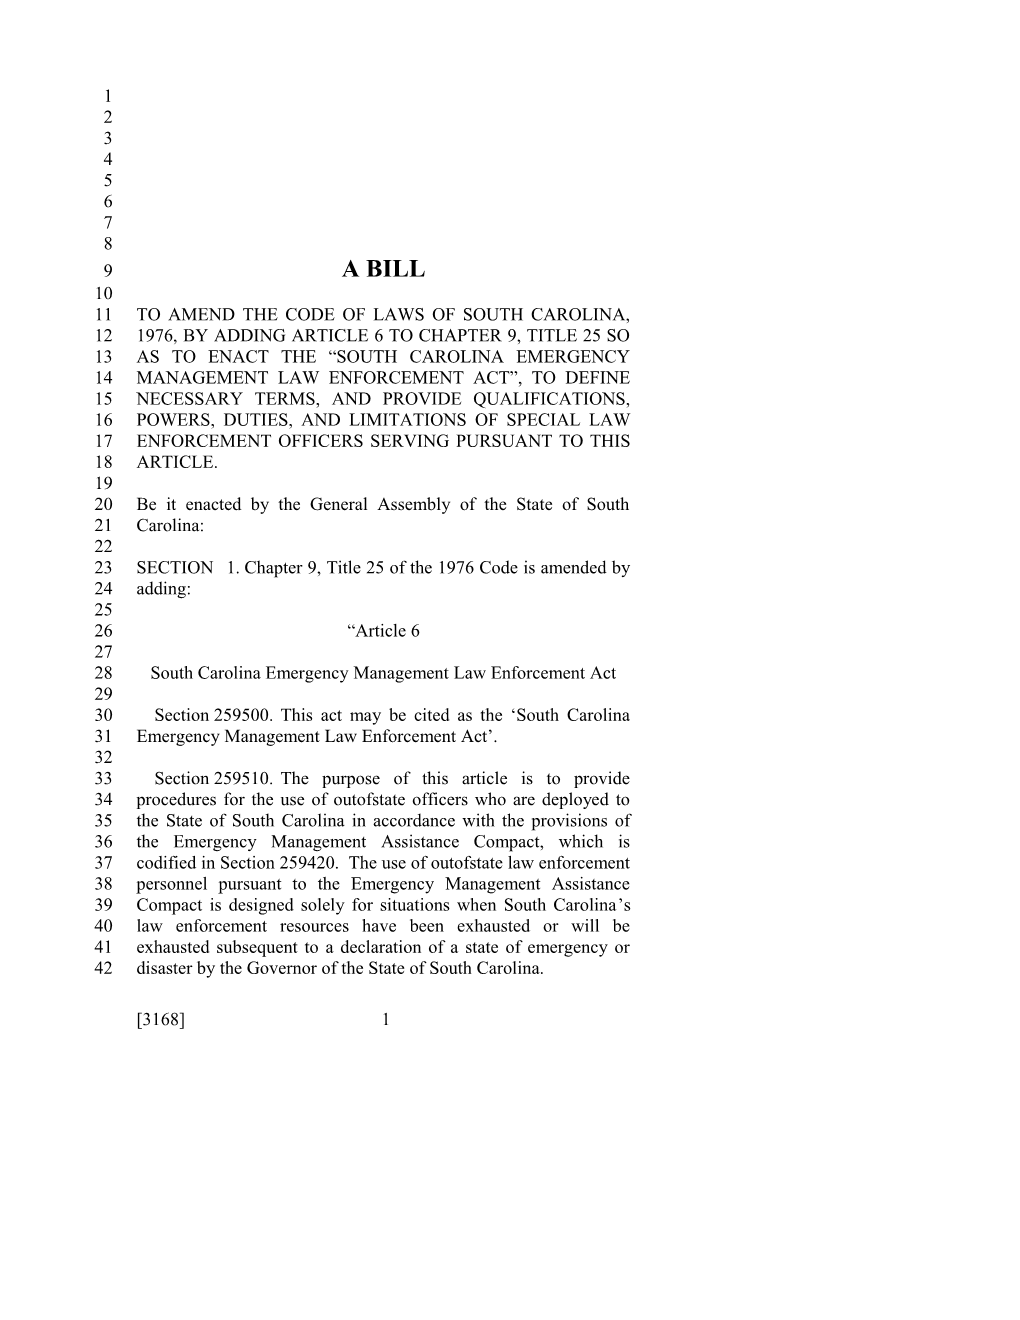 2015-2016 Bill 3168 Text of Previous Version (Dec. 11, 2014) - South Carolina Legislature Online